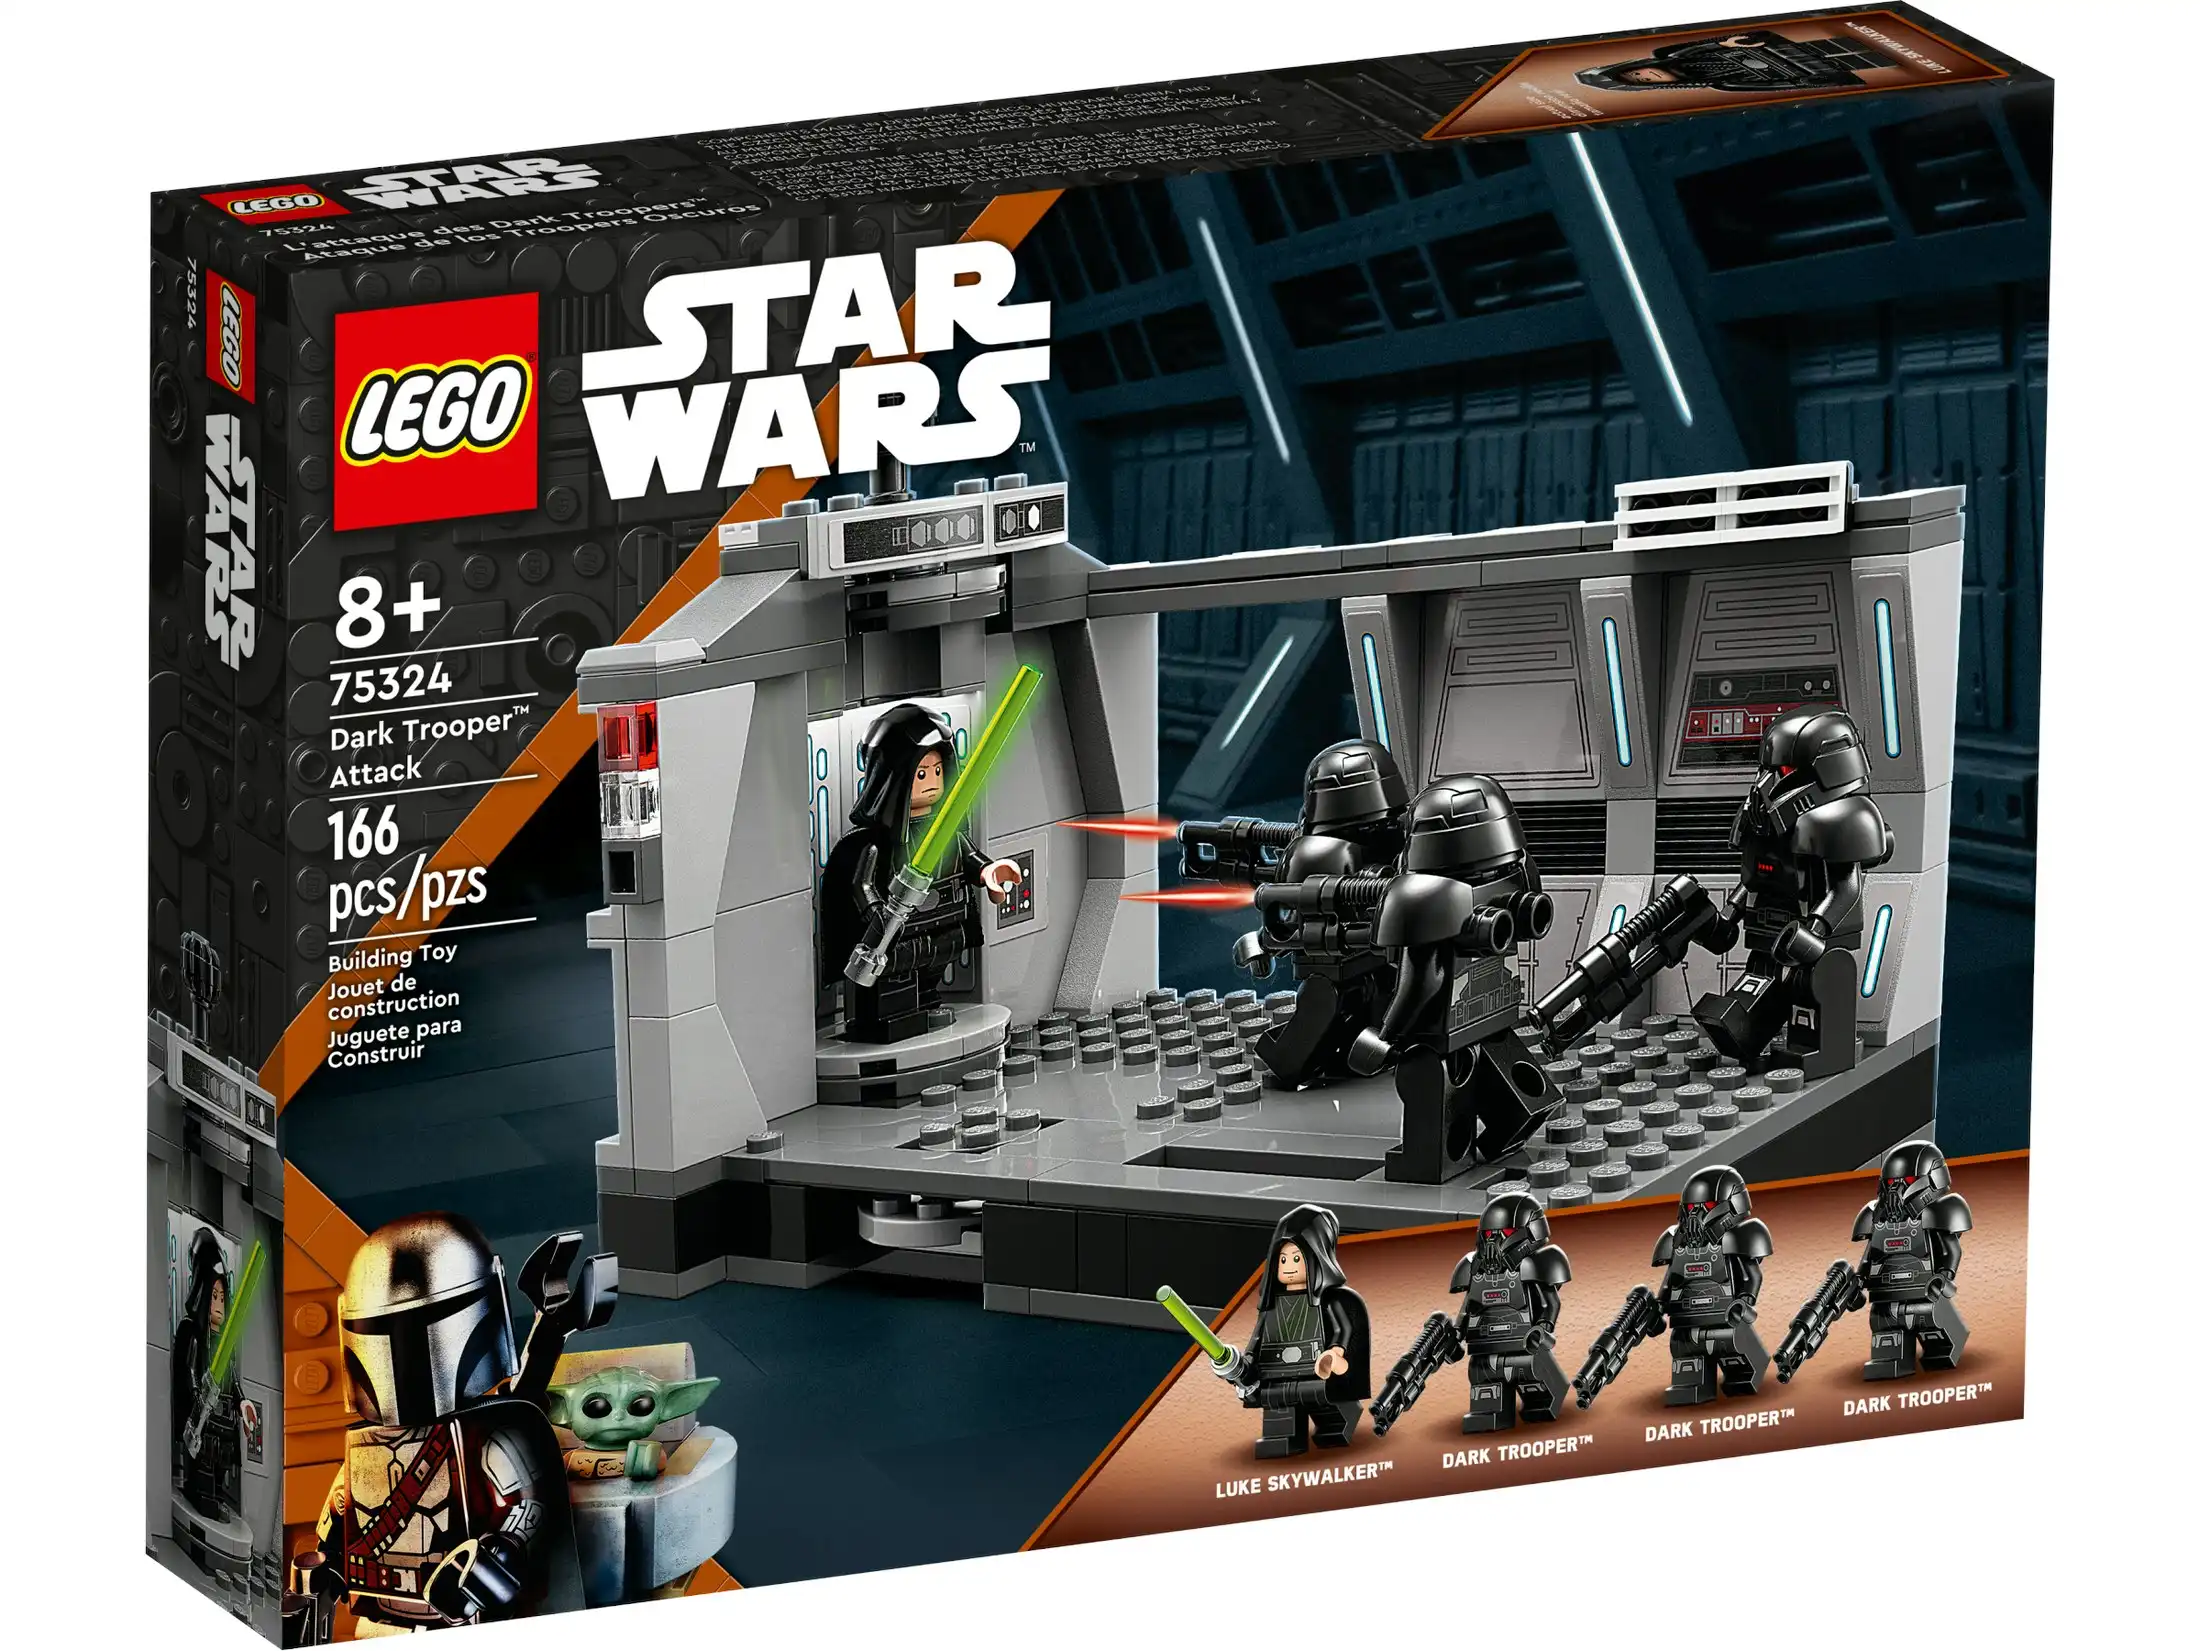 LEGO 75324 Dark Trooper™ Attack - Star Wars